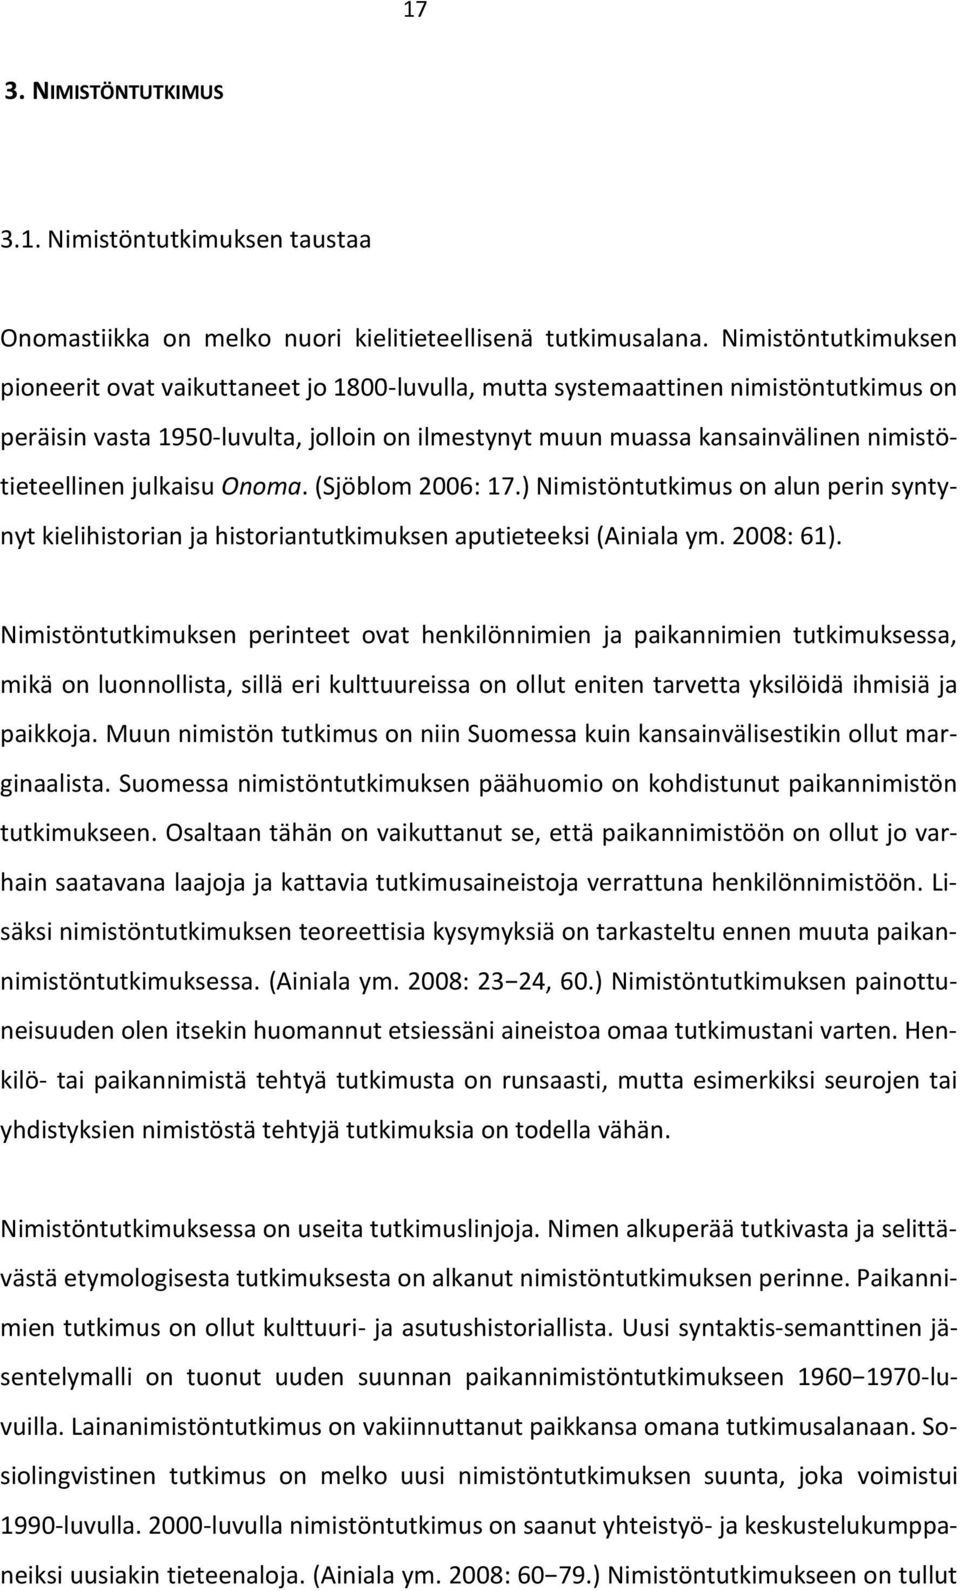 nimistötieteellinen julkaisu Onoma. (Sjöblom 2006: 17.) Nimistöntutkimus on alun perin syntynyt kielihistorian ja historiantutkimuksen aputieteeksi (Ainiala ym. 2008: 61).